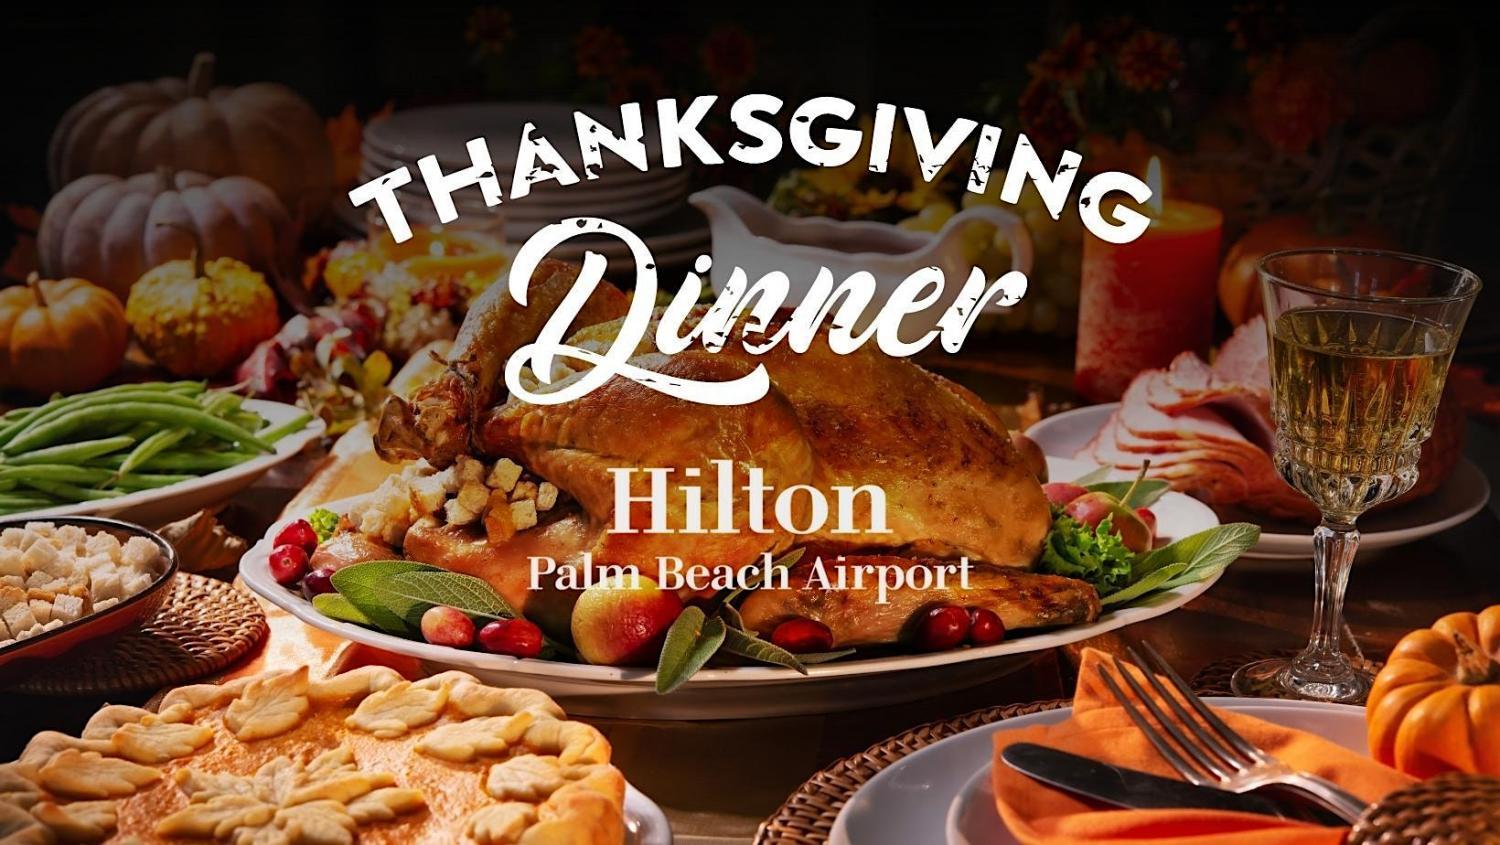 Thanksgiving Dinner
Thu Nov 24, 2:00 PM - Thu Nov 24, 9:00 PM
in 35 days